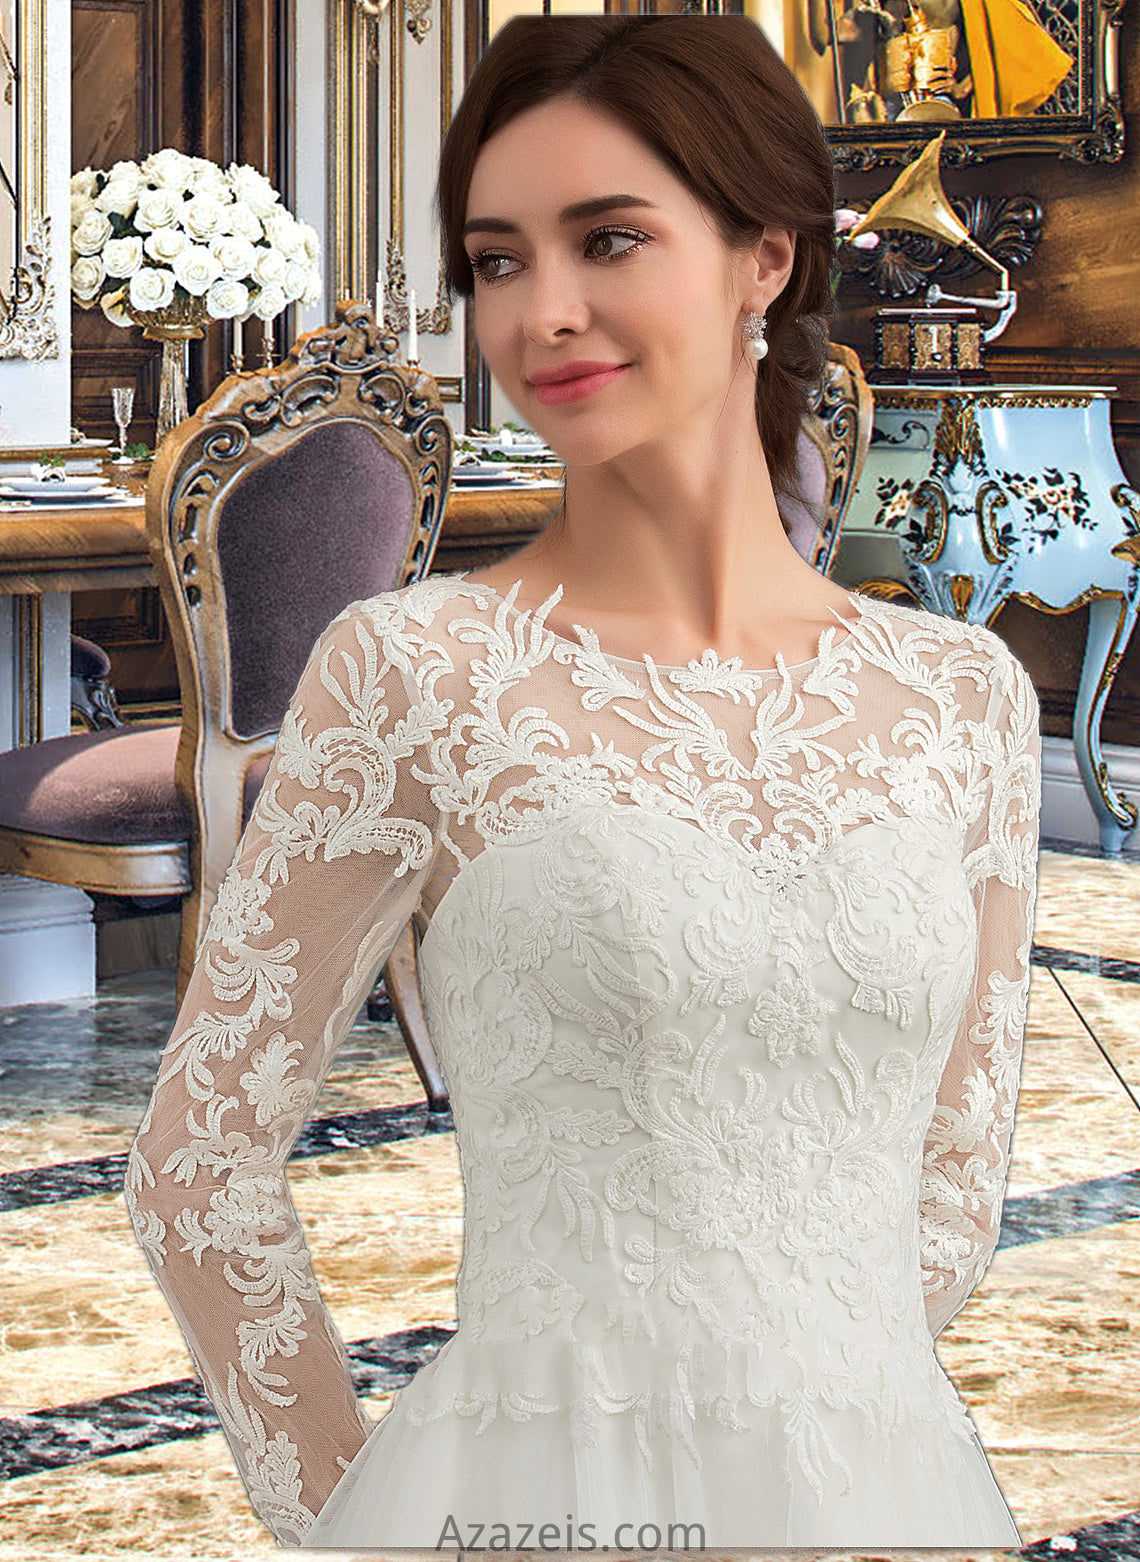 Karen Ball-Gown/Princess Scoop Neck Sweep Train Tulle Wedding Dress DFP0013759